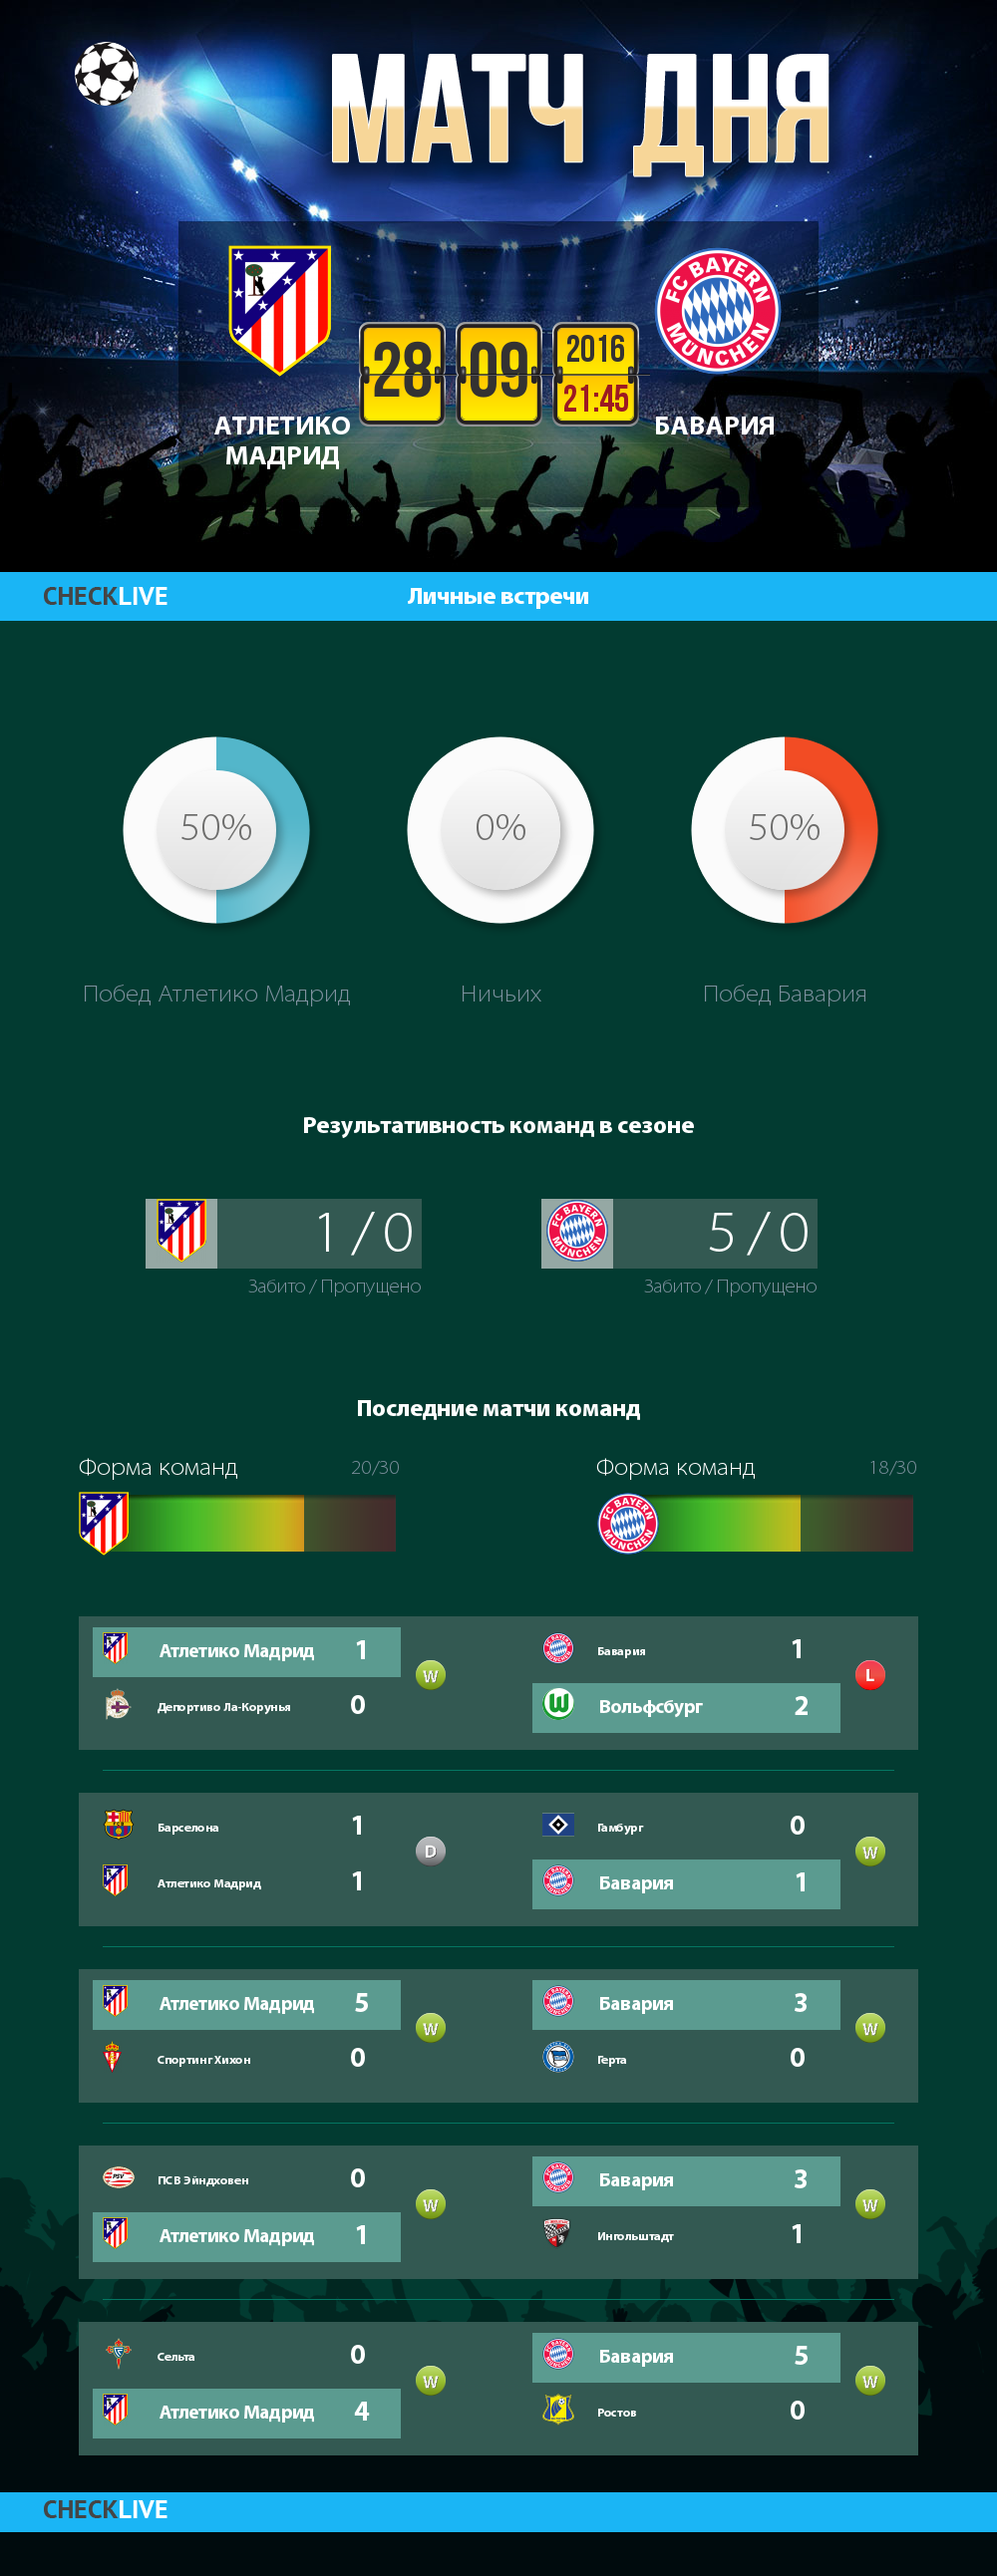 Инфографика Атлетико Мадрид и Бавария матч дня 28.09.2016